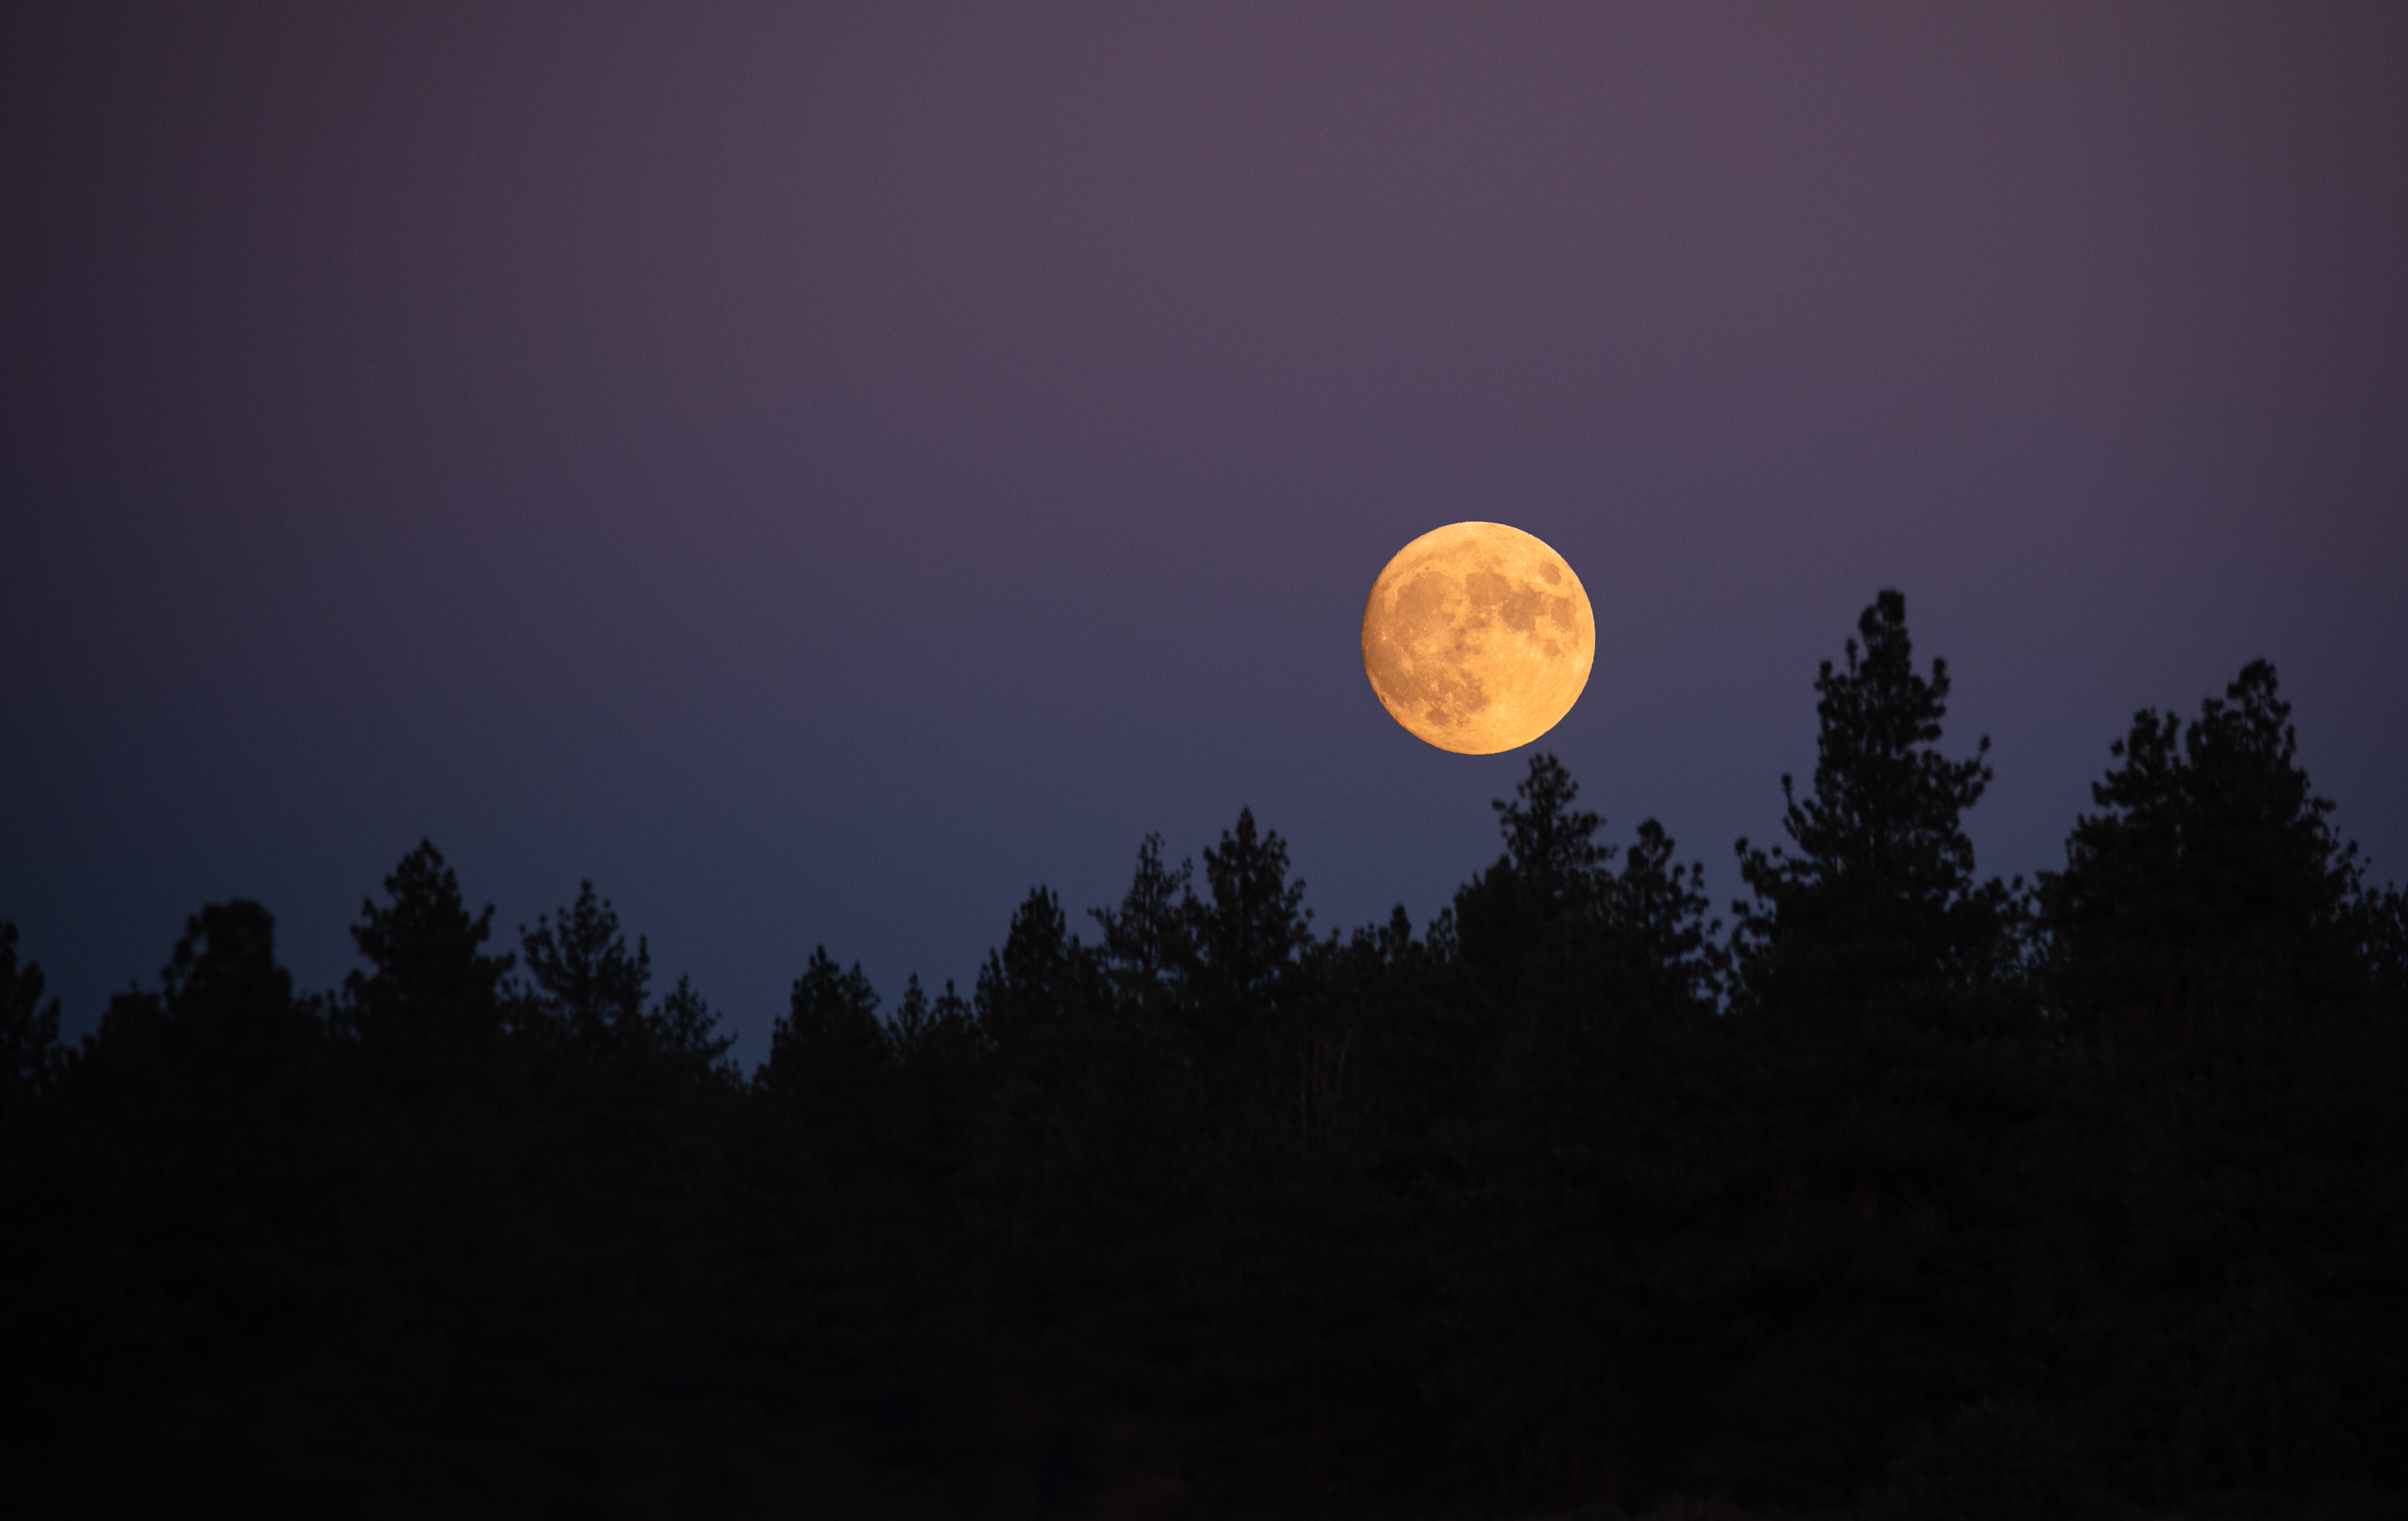 DSC_4290 - Yosemite Moon.jpg